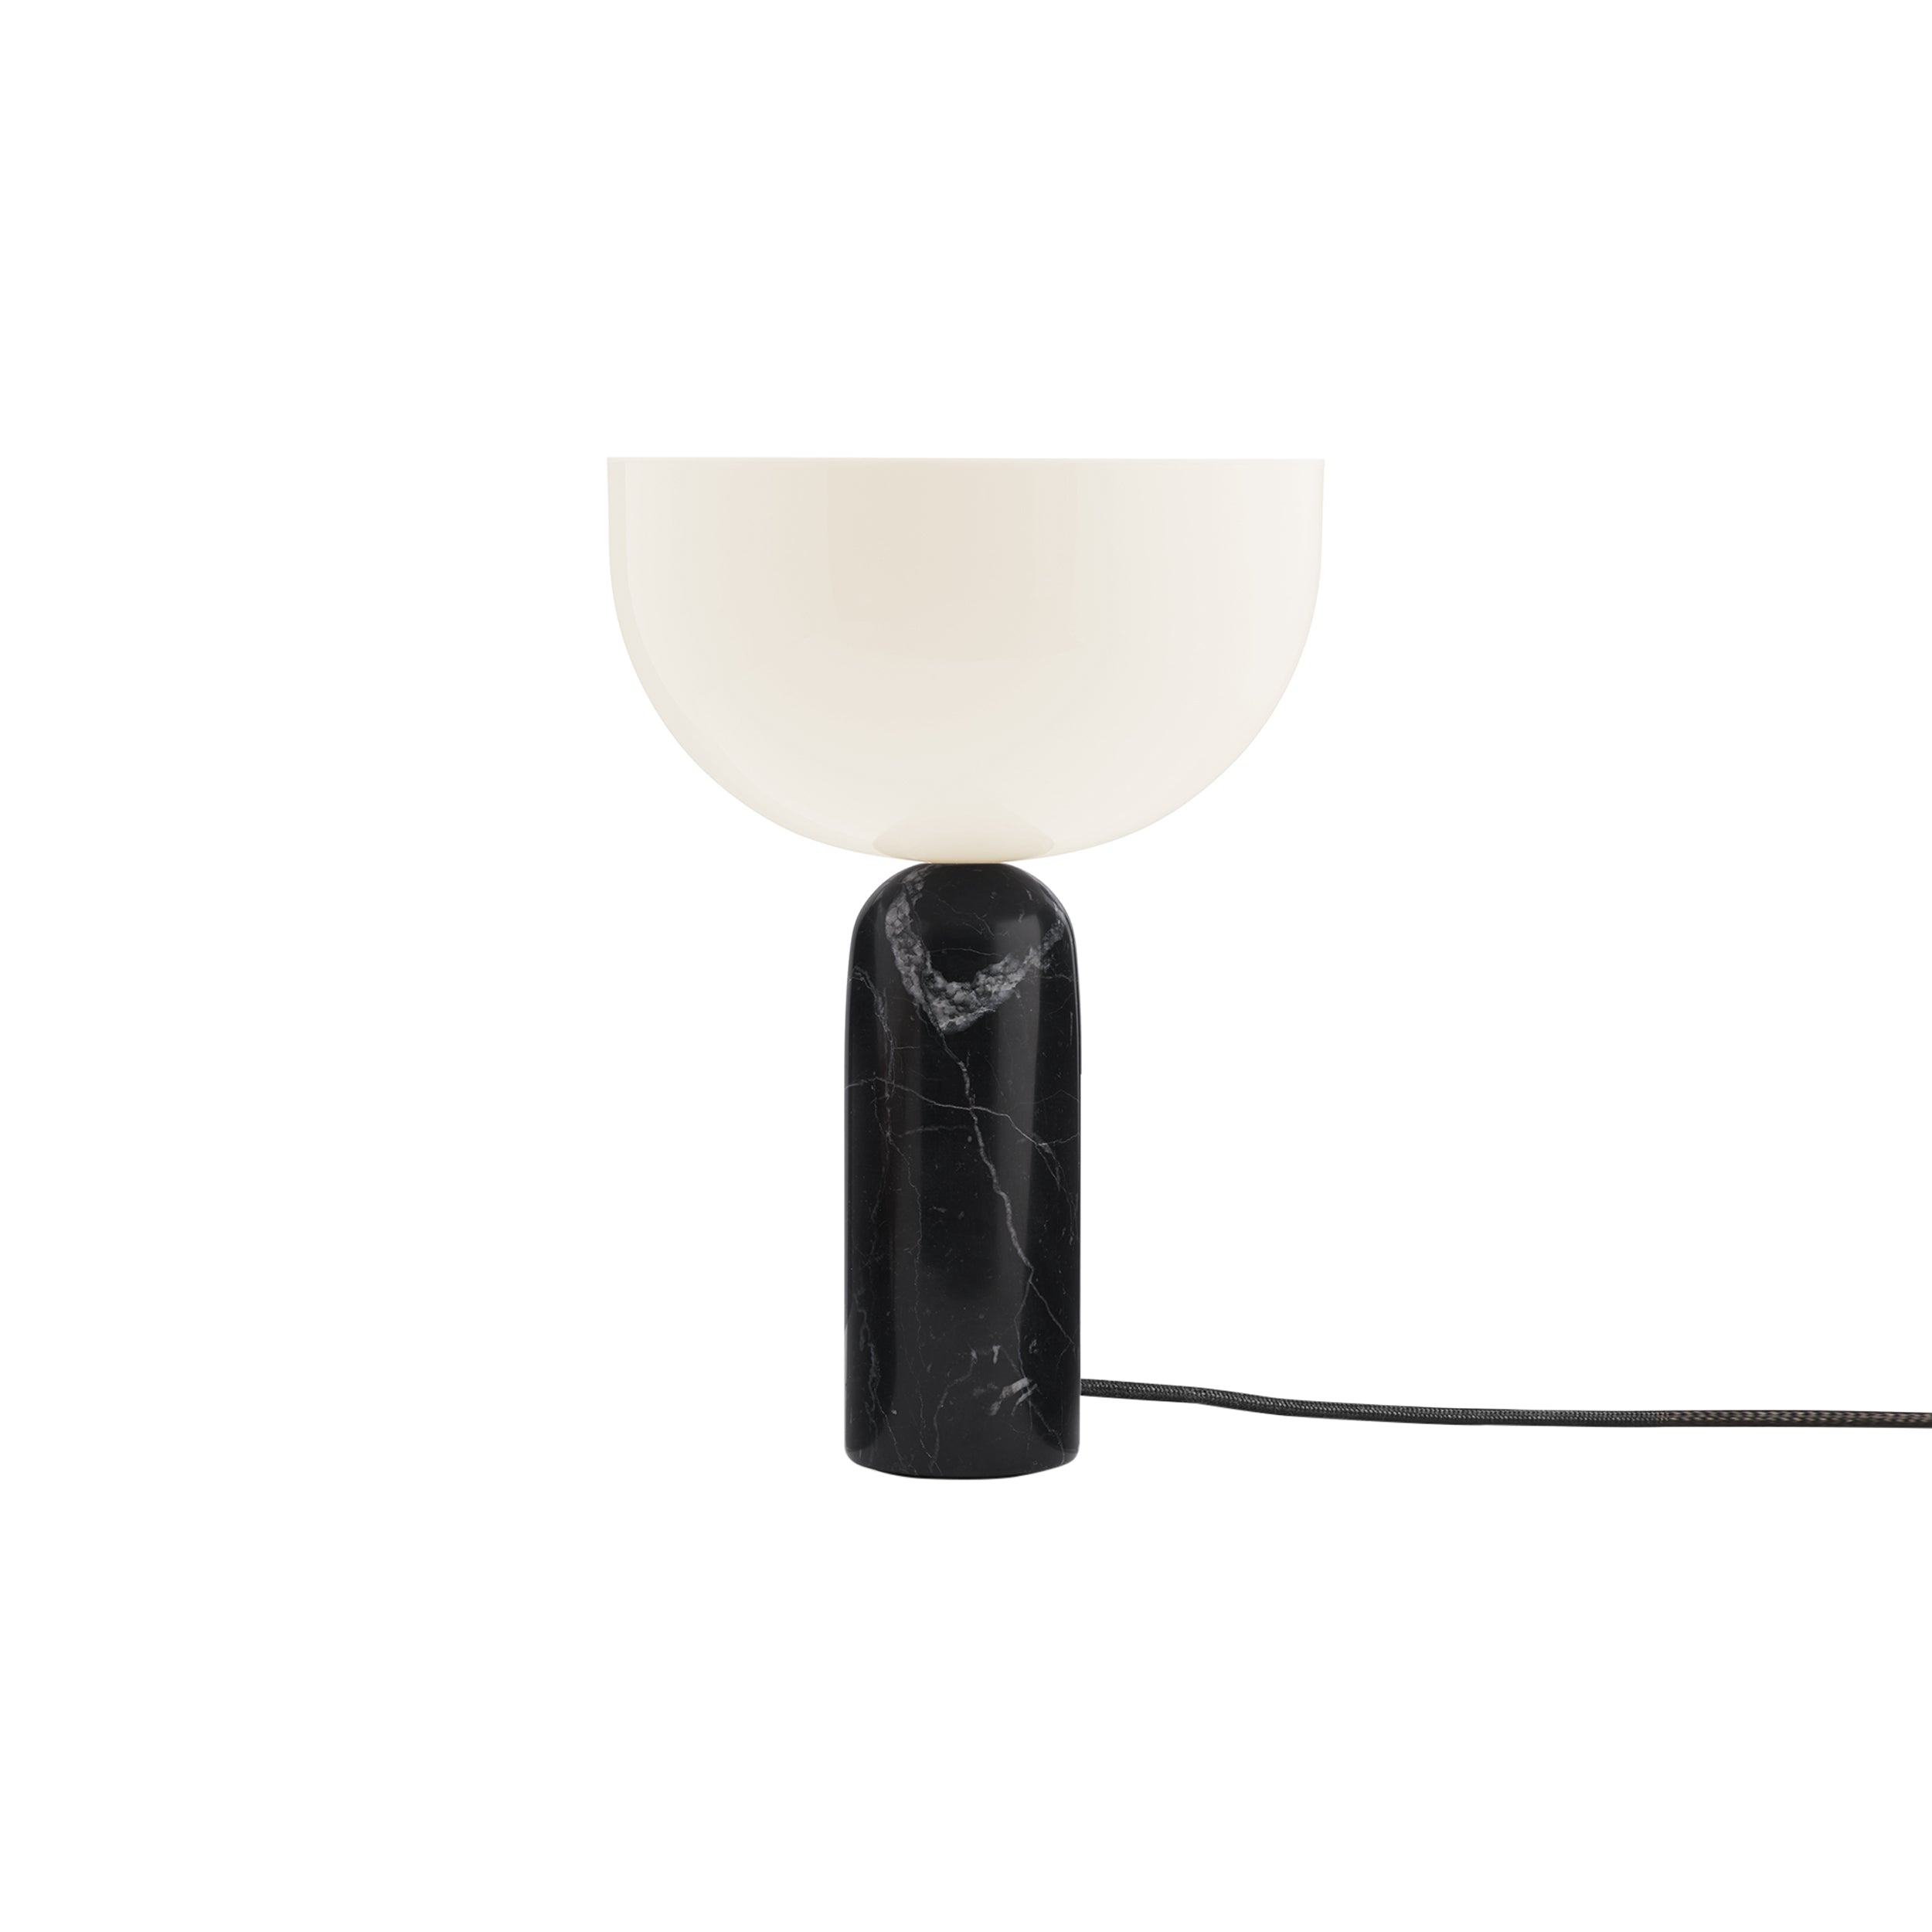 Kizu Table Lamp: Small - 9.8